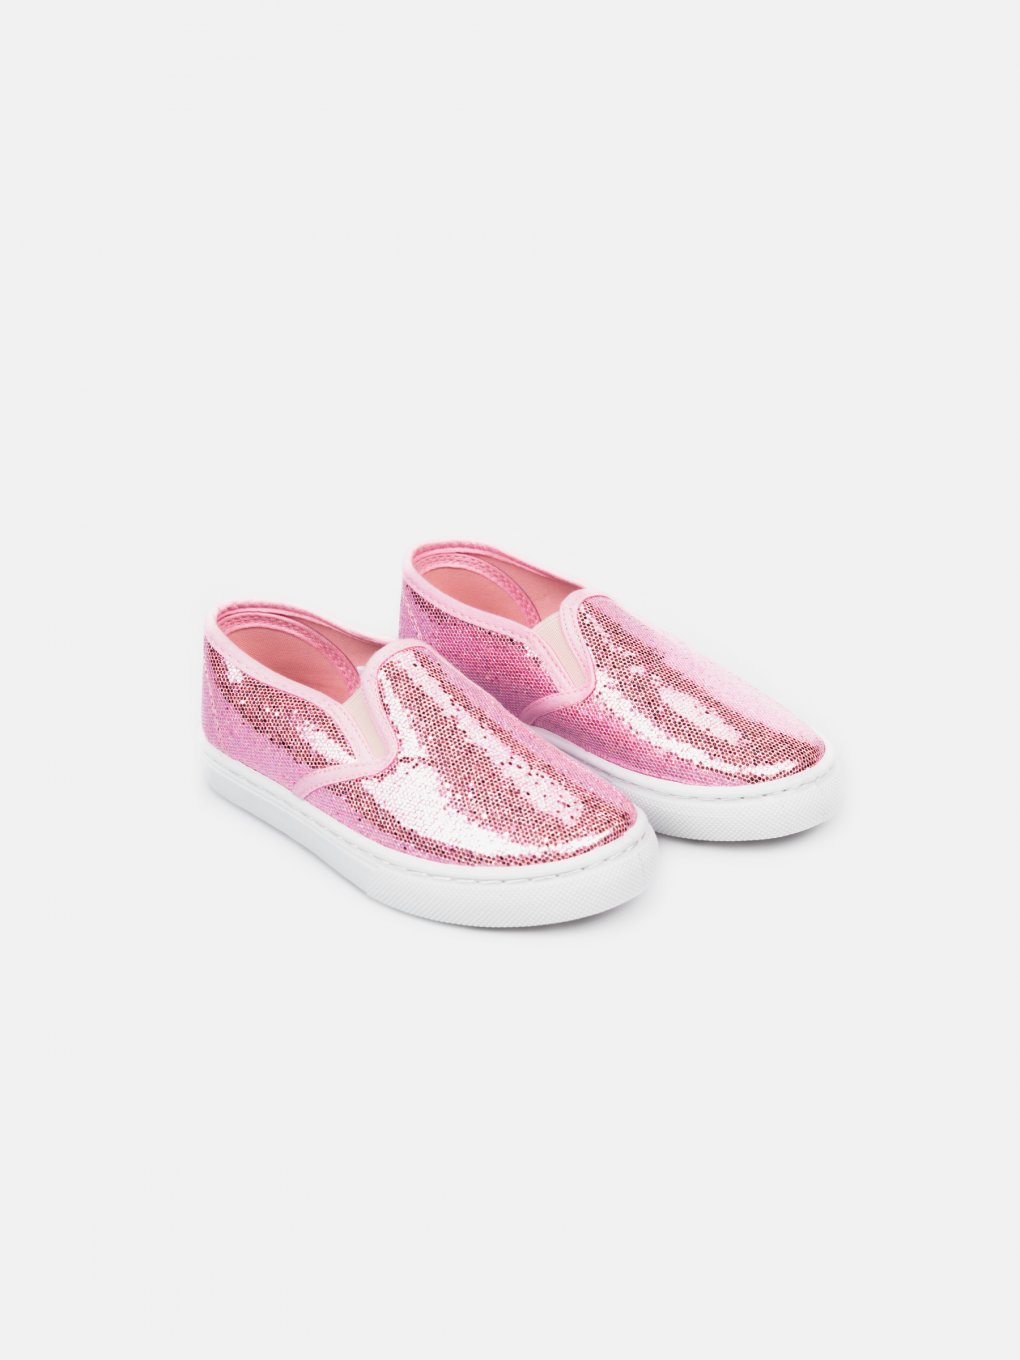 Shiny slip-on shoes